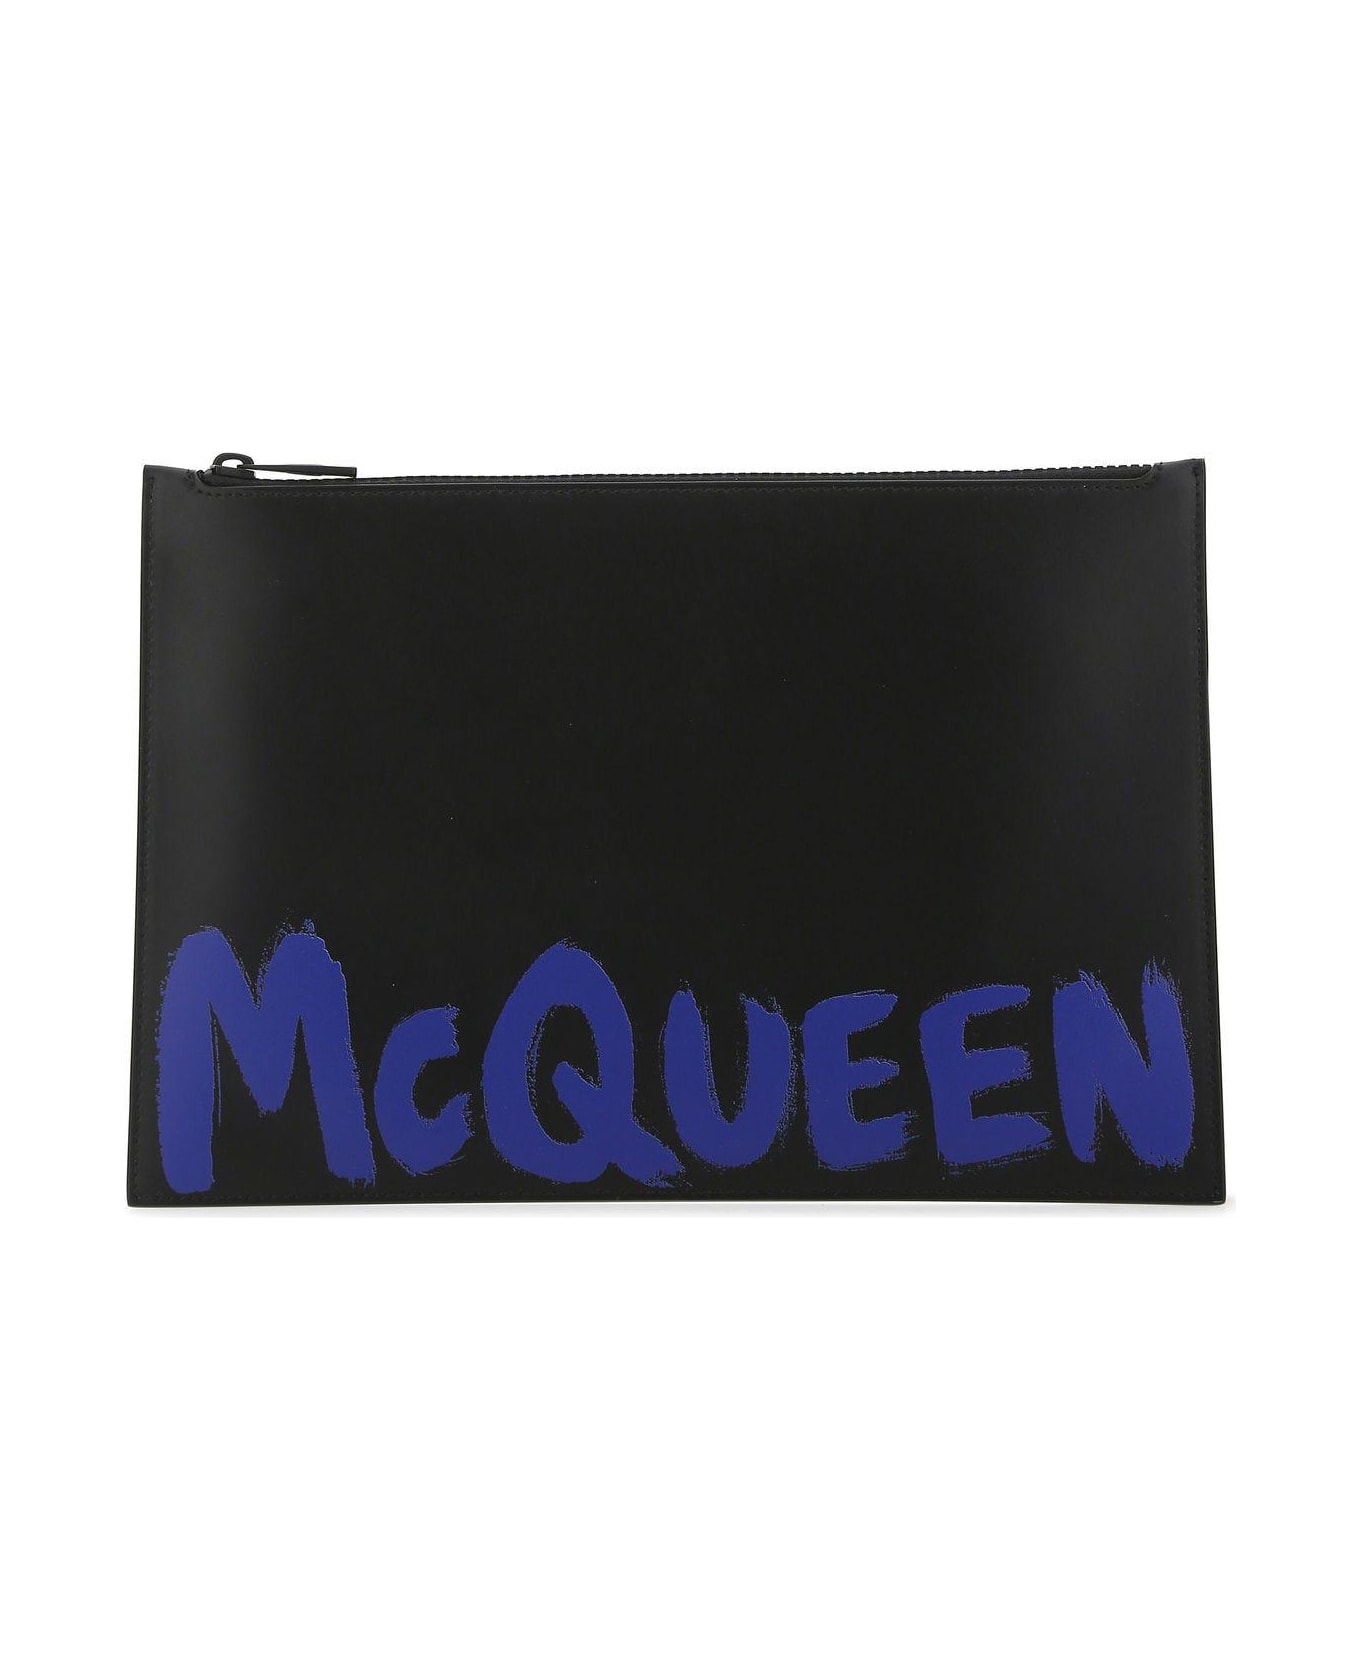 Alexander McQueen Black Beaded Clutch - Black